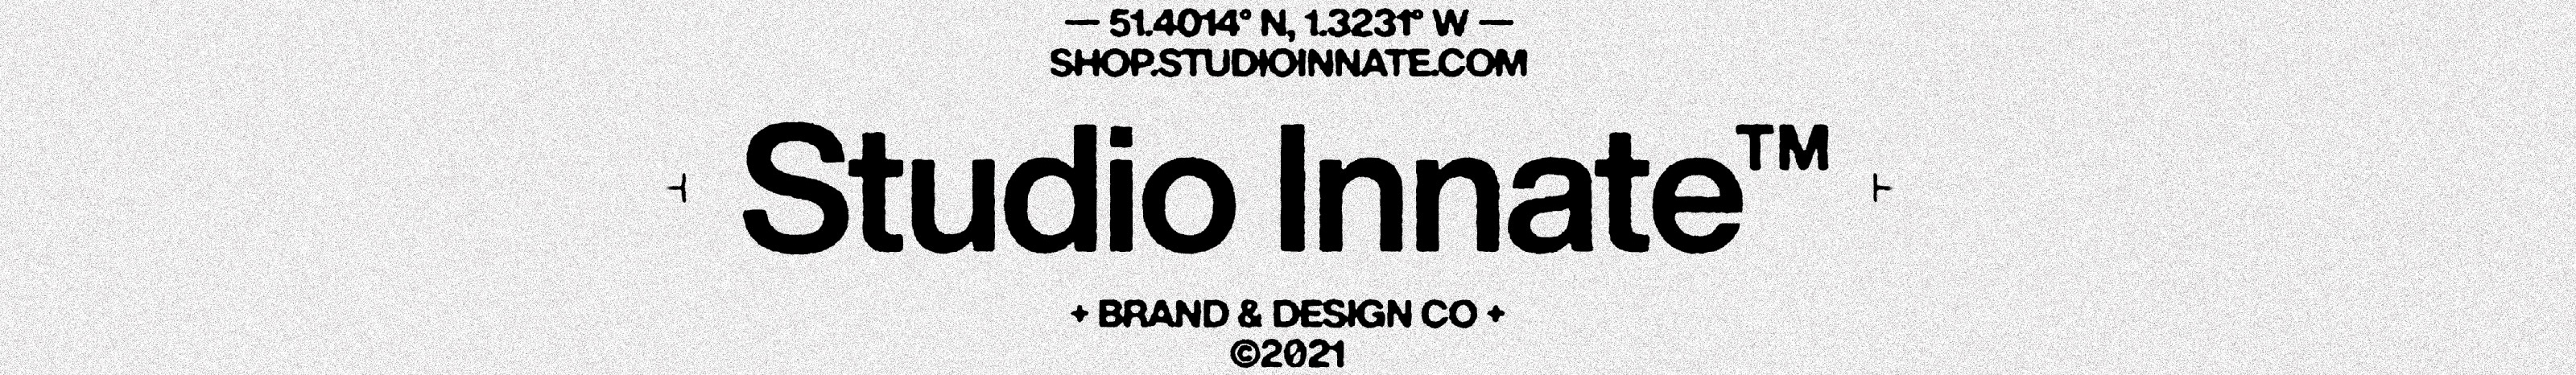 Studio Innate profil başlığı